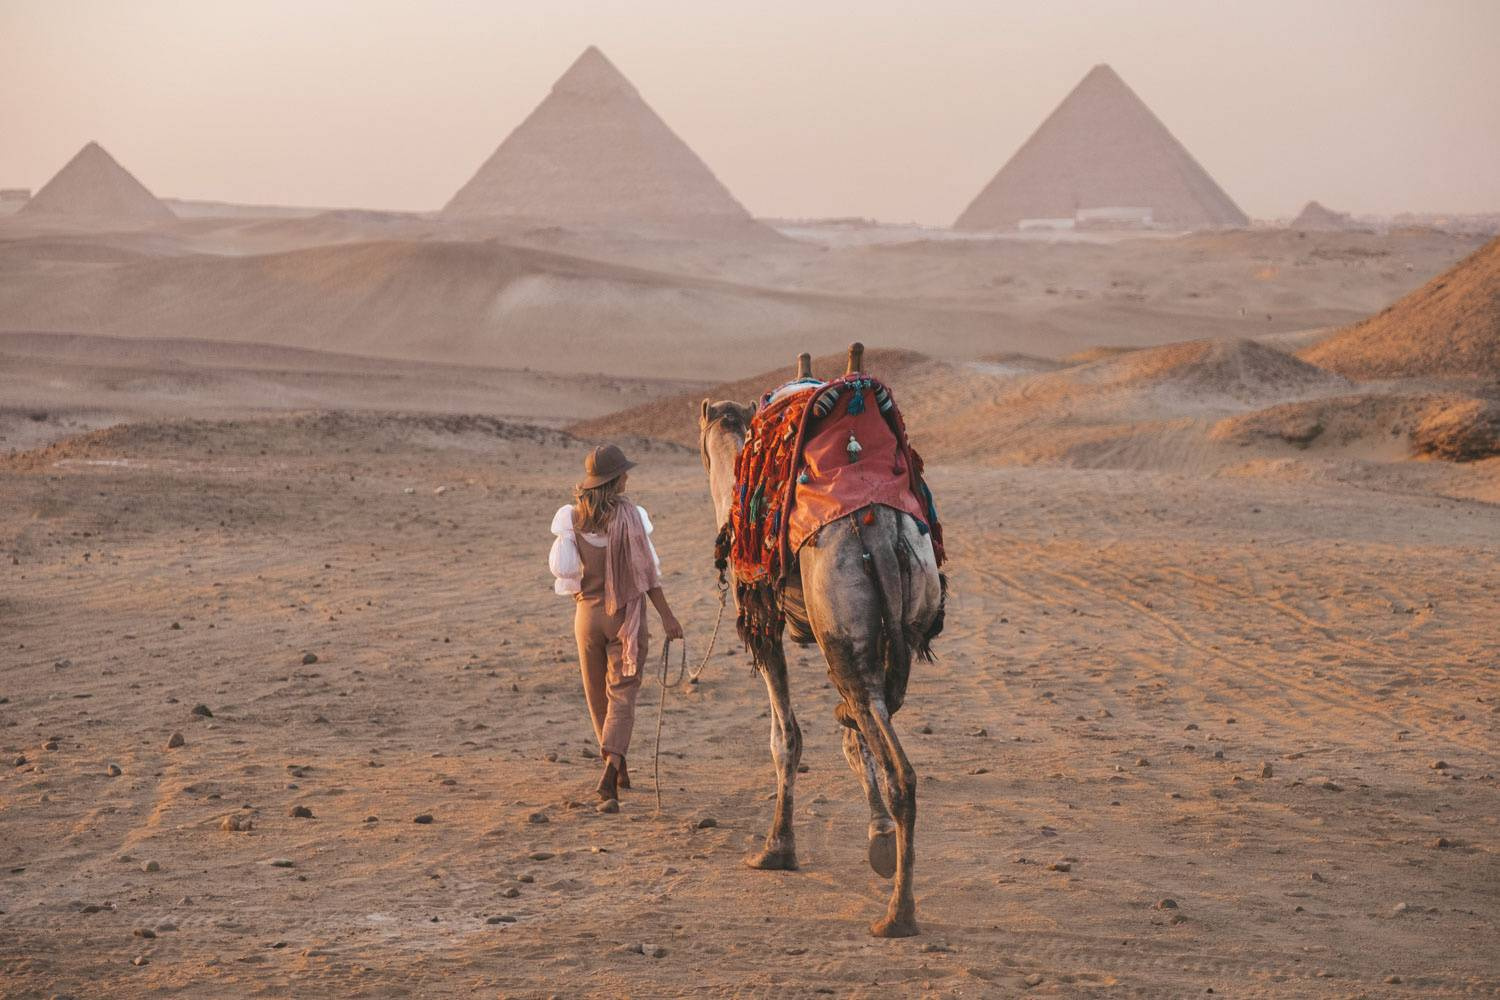 Excursie la Piramidele din Giza din Cairo